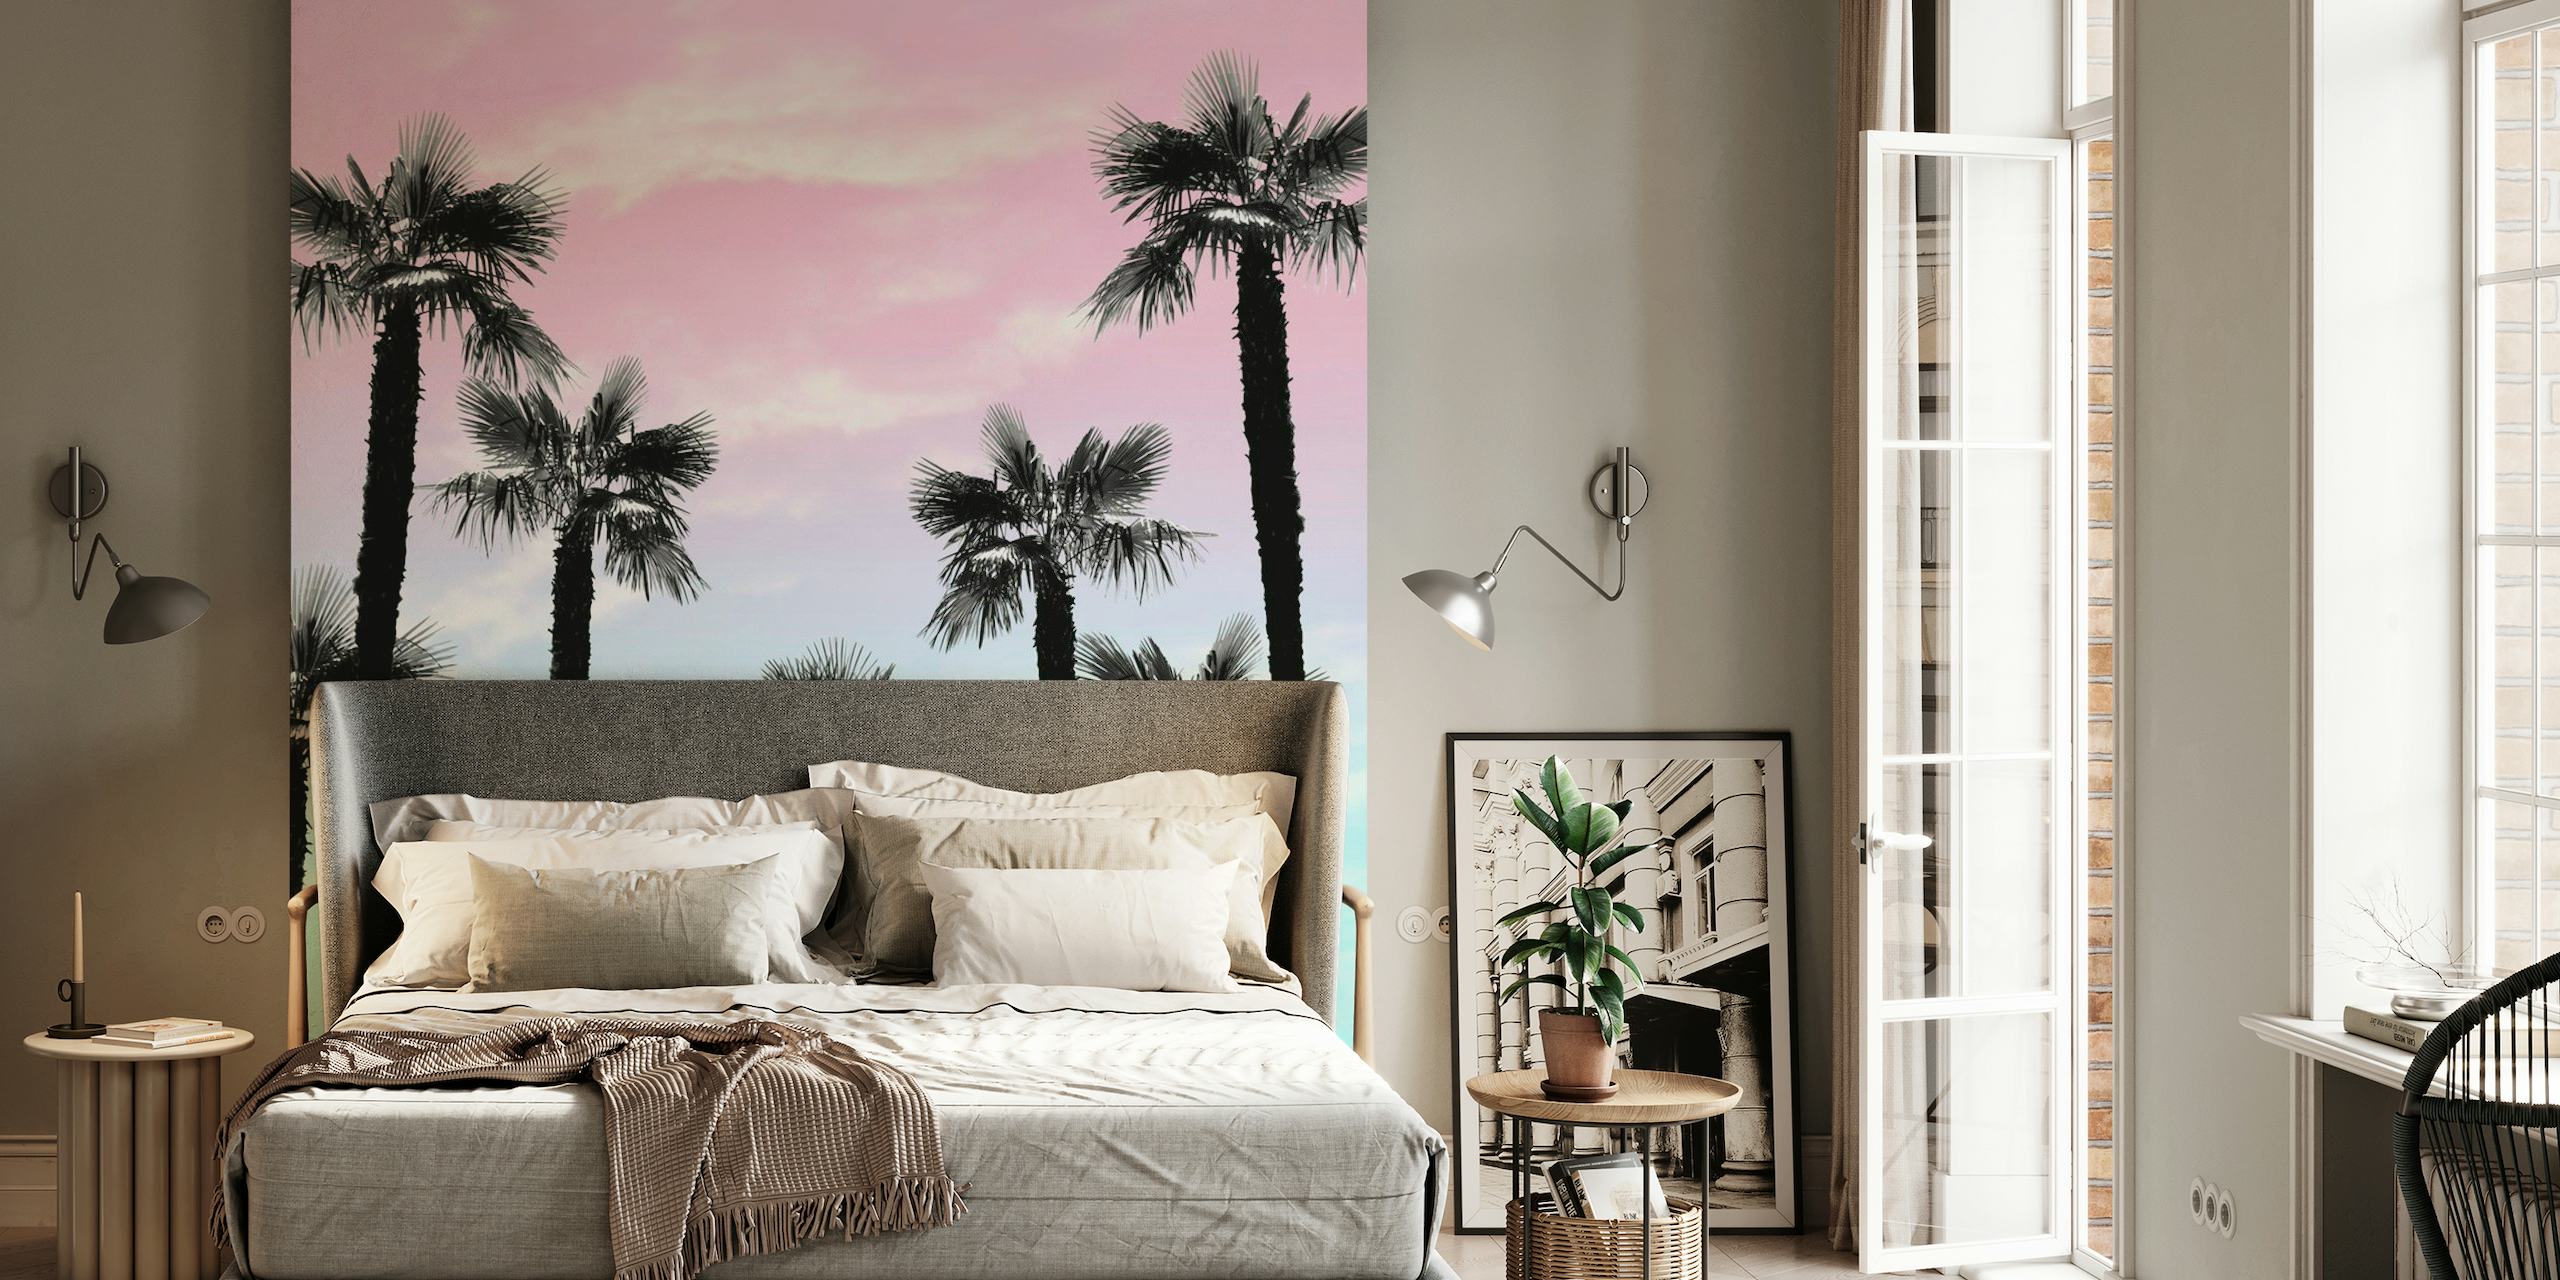 Tropical Palm Trees Dream 4 papel pintado